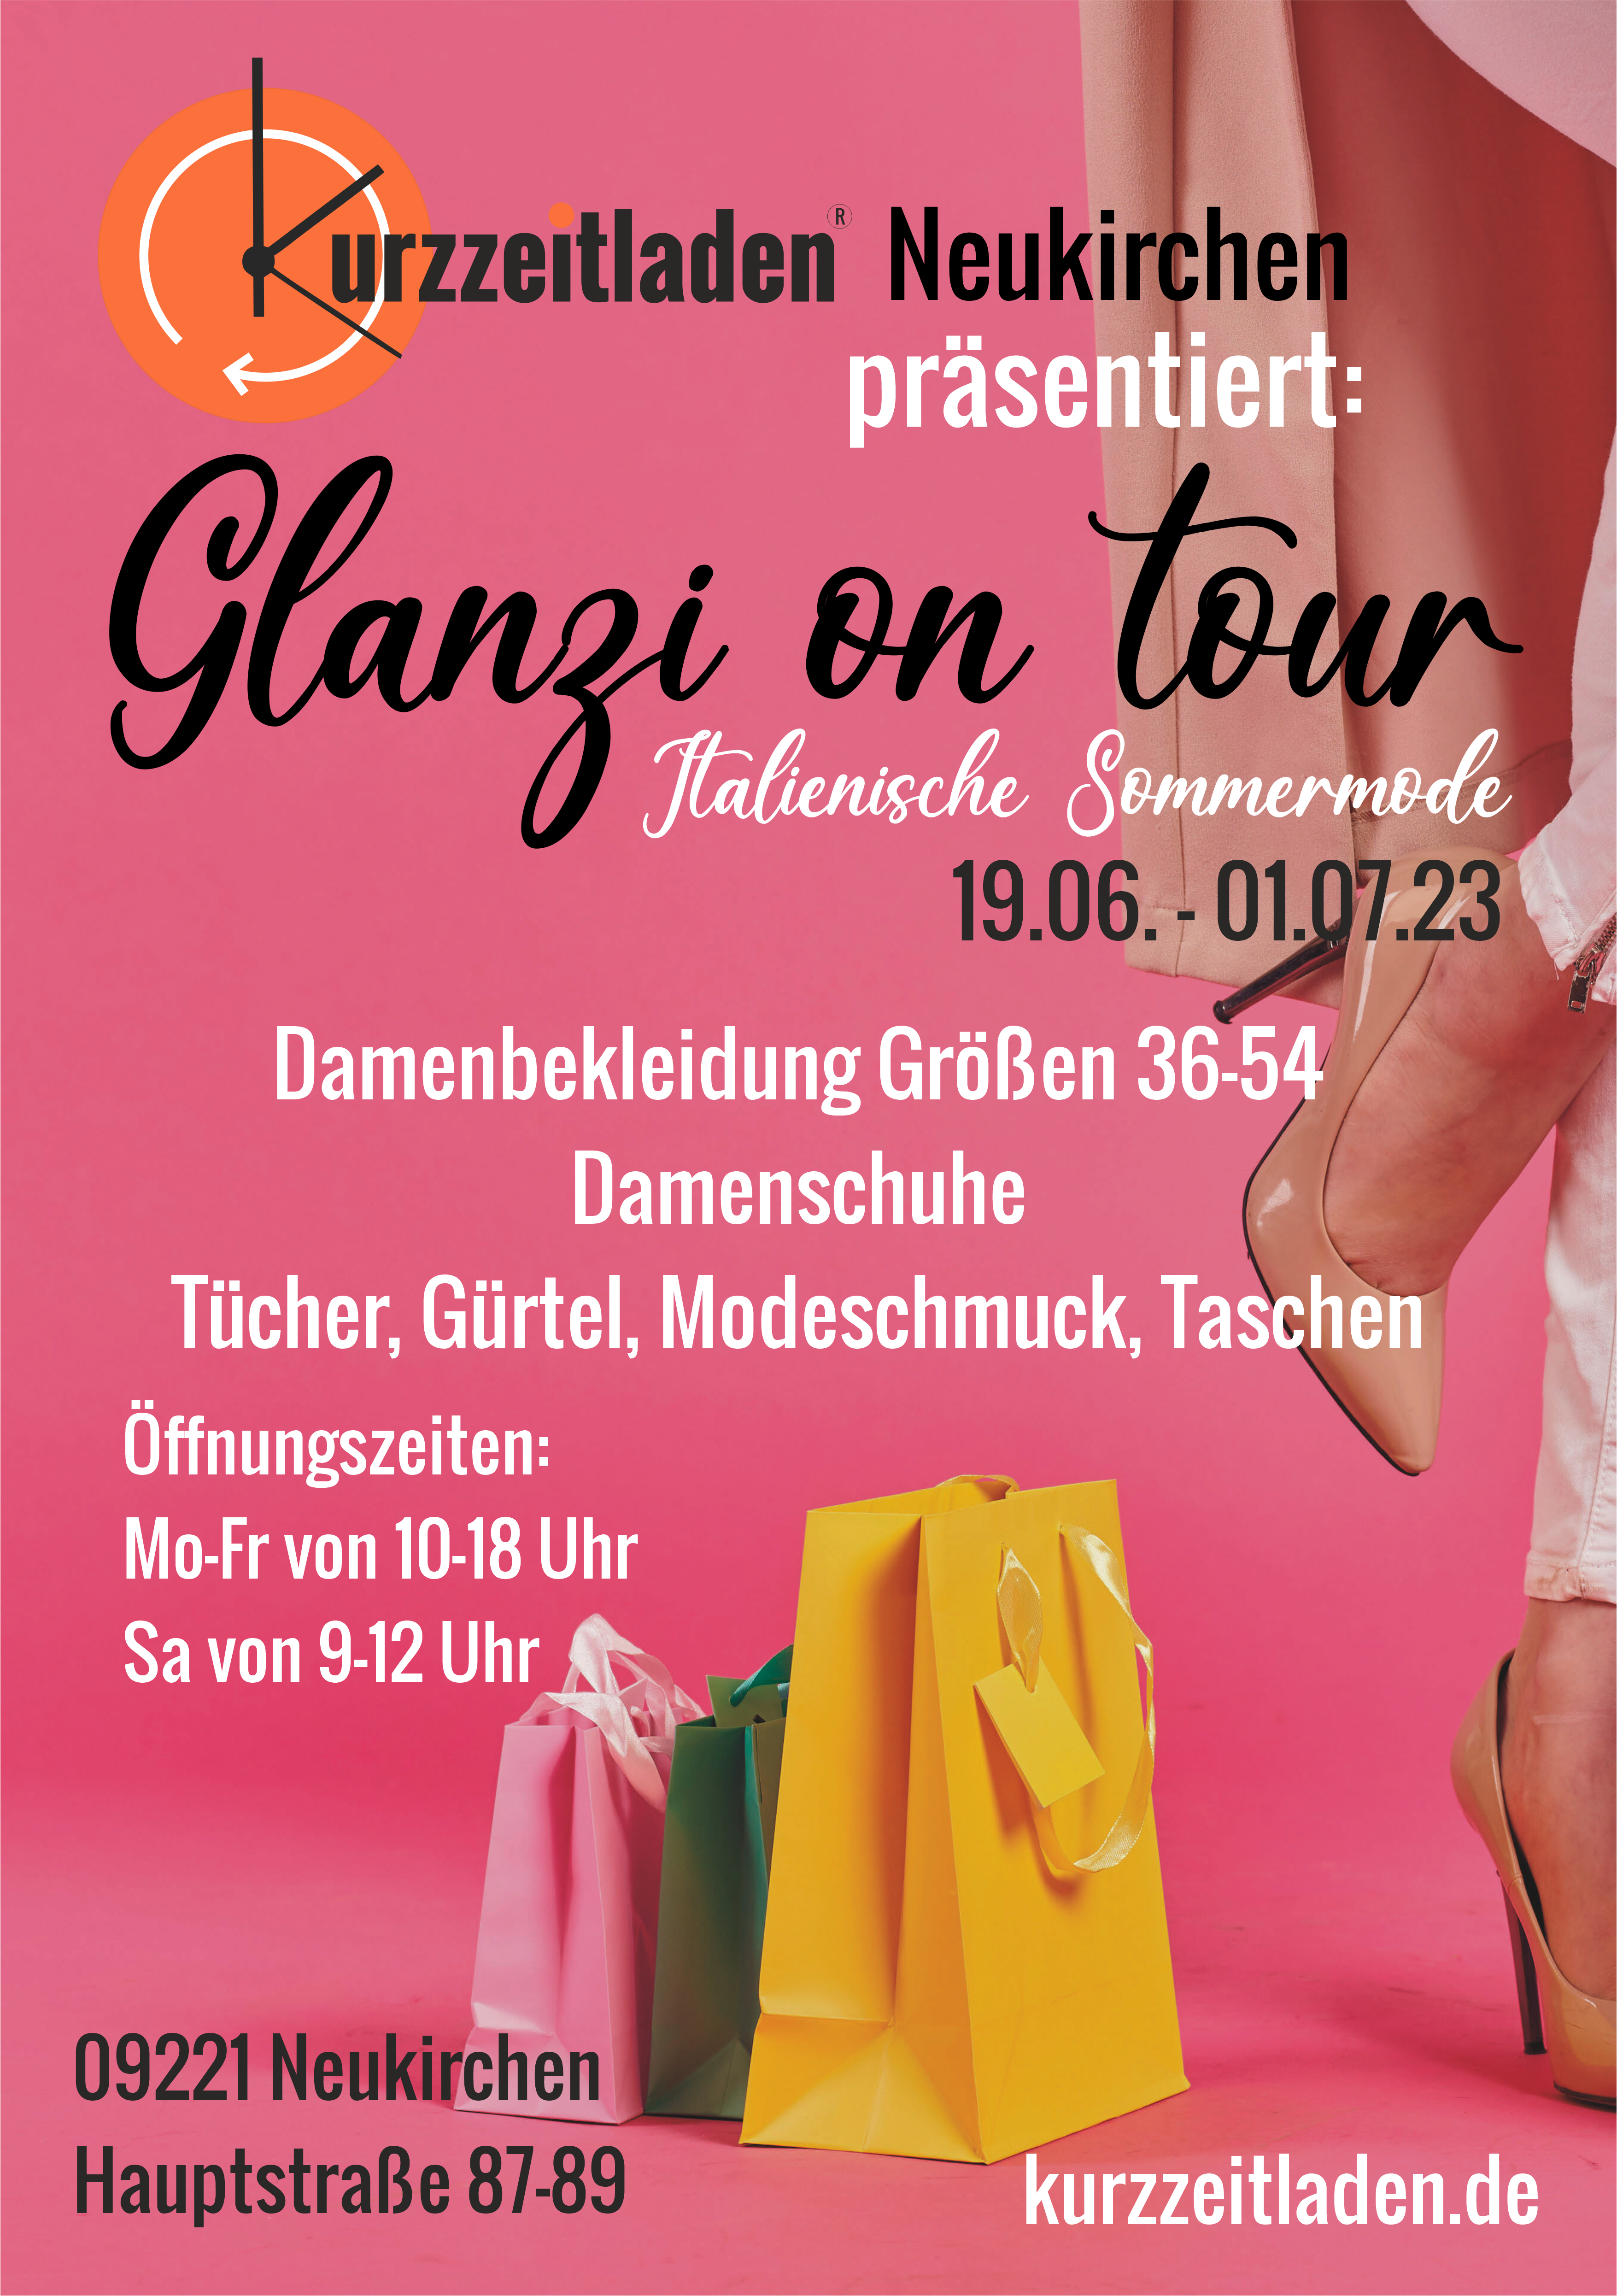 Glanzi on tour